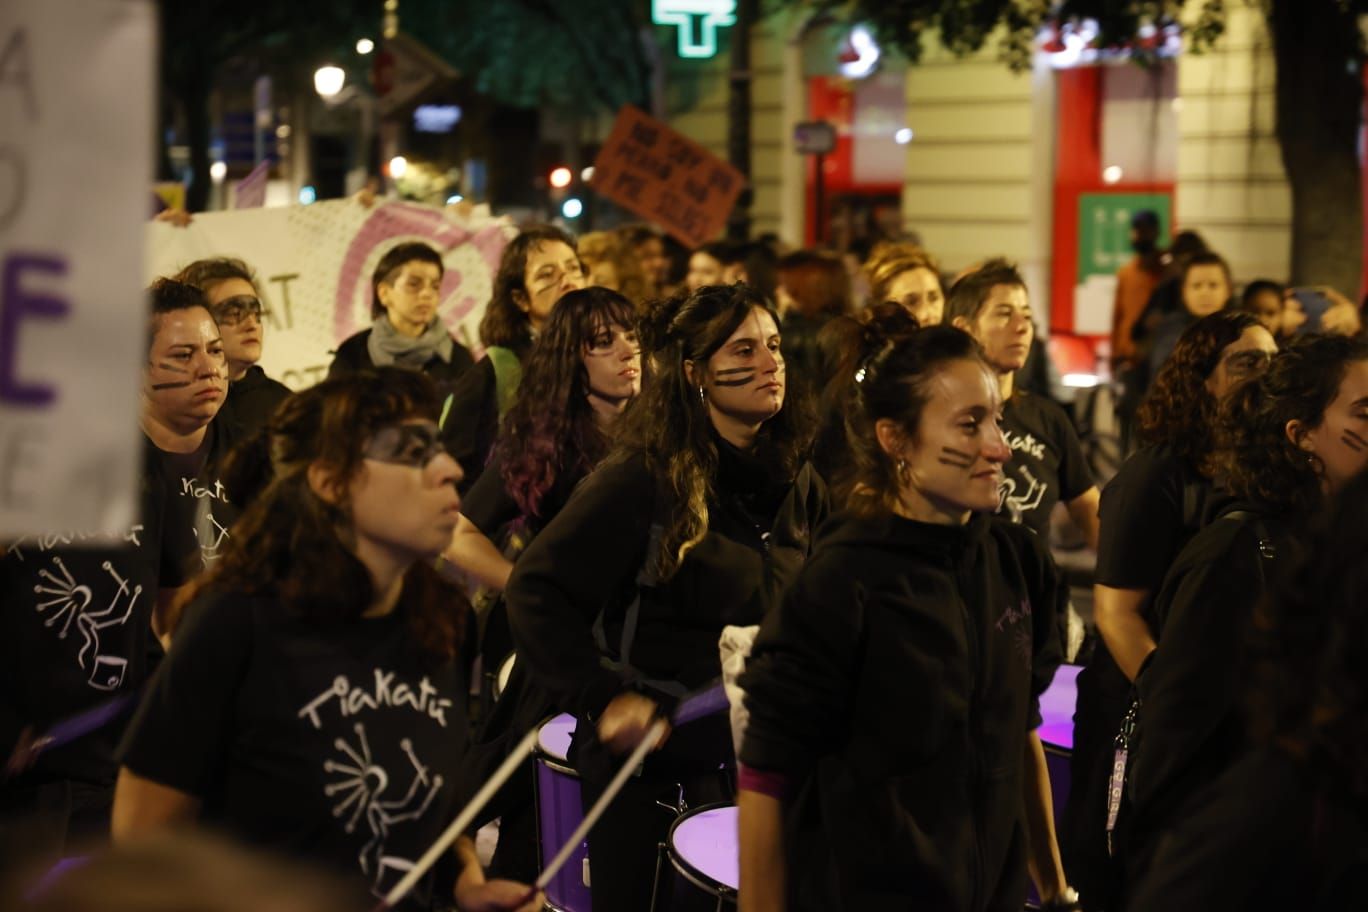 València se tiñe de morado en la lucha contra la violencia machista